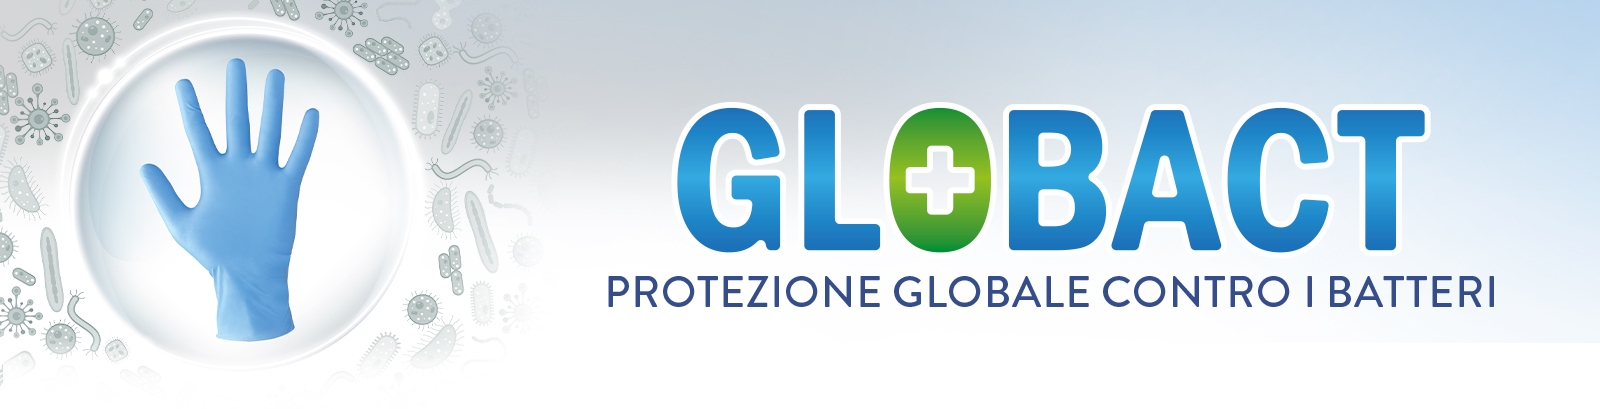 Globact è il guanto monouso in nitrile che protegge alimenti e superfici da batteri, muffe, funghi e virus